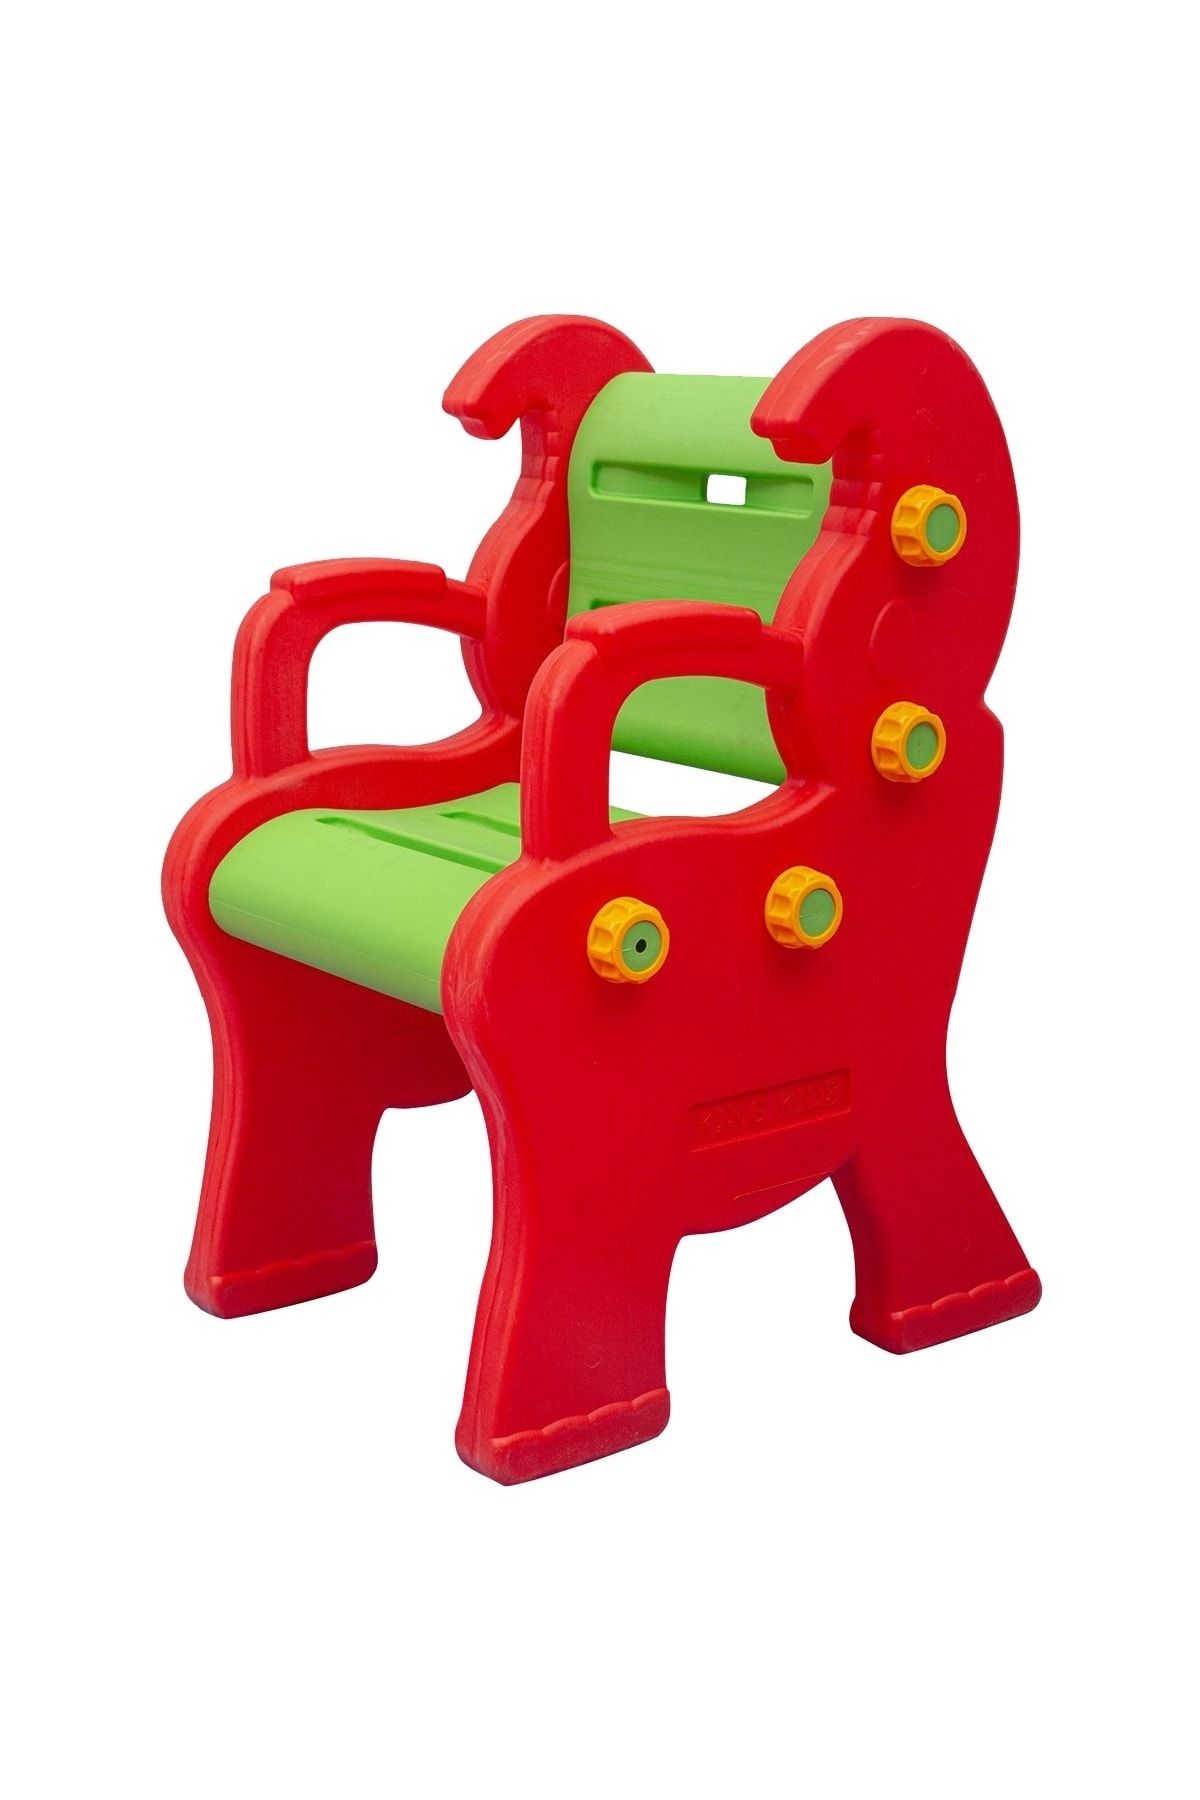 EXECTUS Çocuk Sandalye Kırmızı/yeşil - Anaokulu Sandalye - Kreş Sandalye - Çocuk Küçük Bank - Oturak